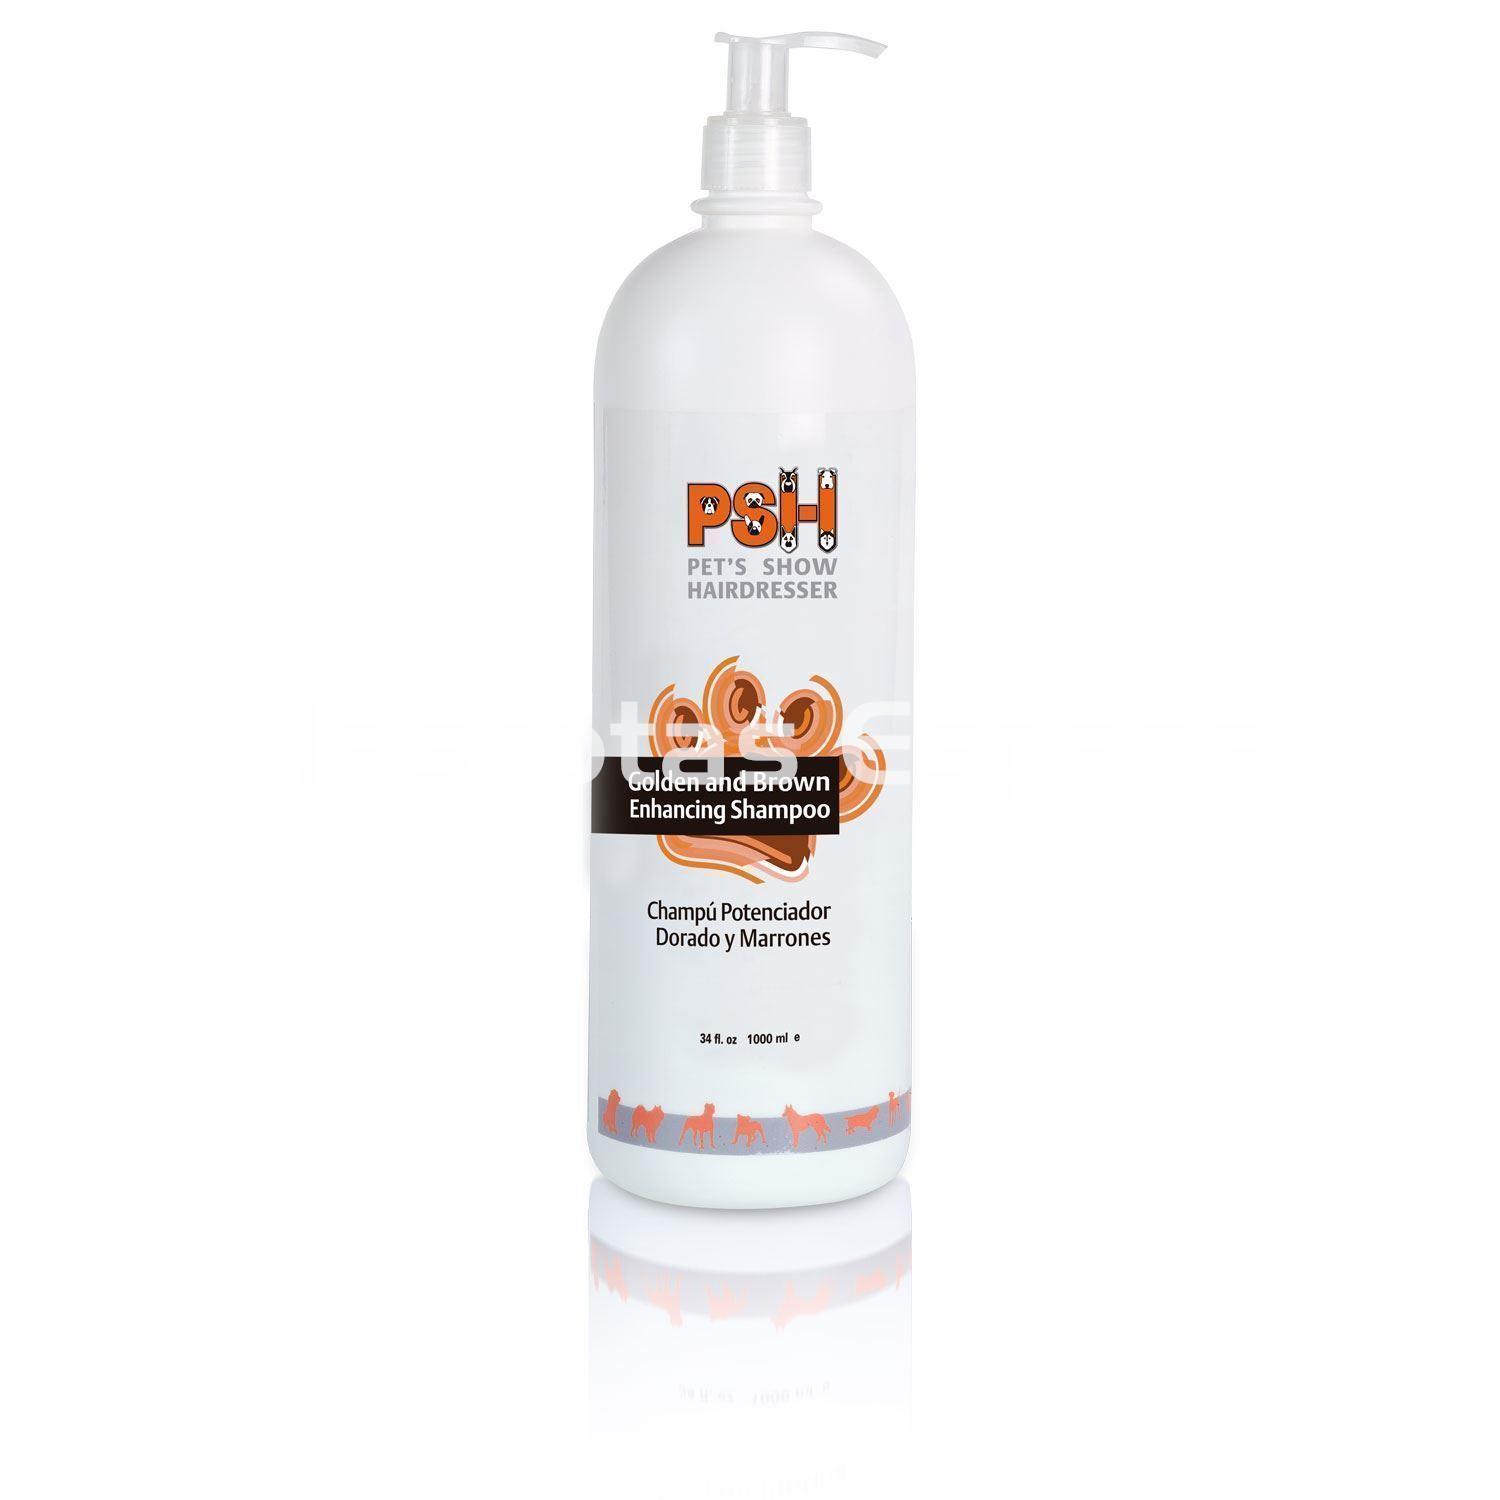 PSH Golden and Brown Enhancing Shampoo (Champú Potencador Dorado y Marrones) 1L - Imagen 1